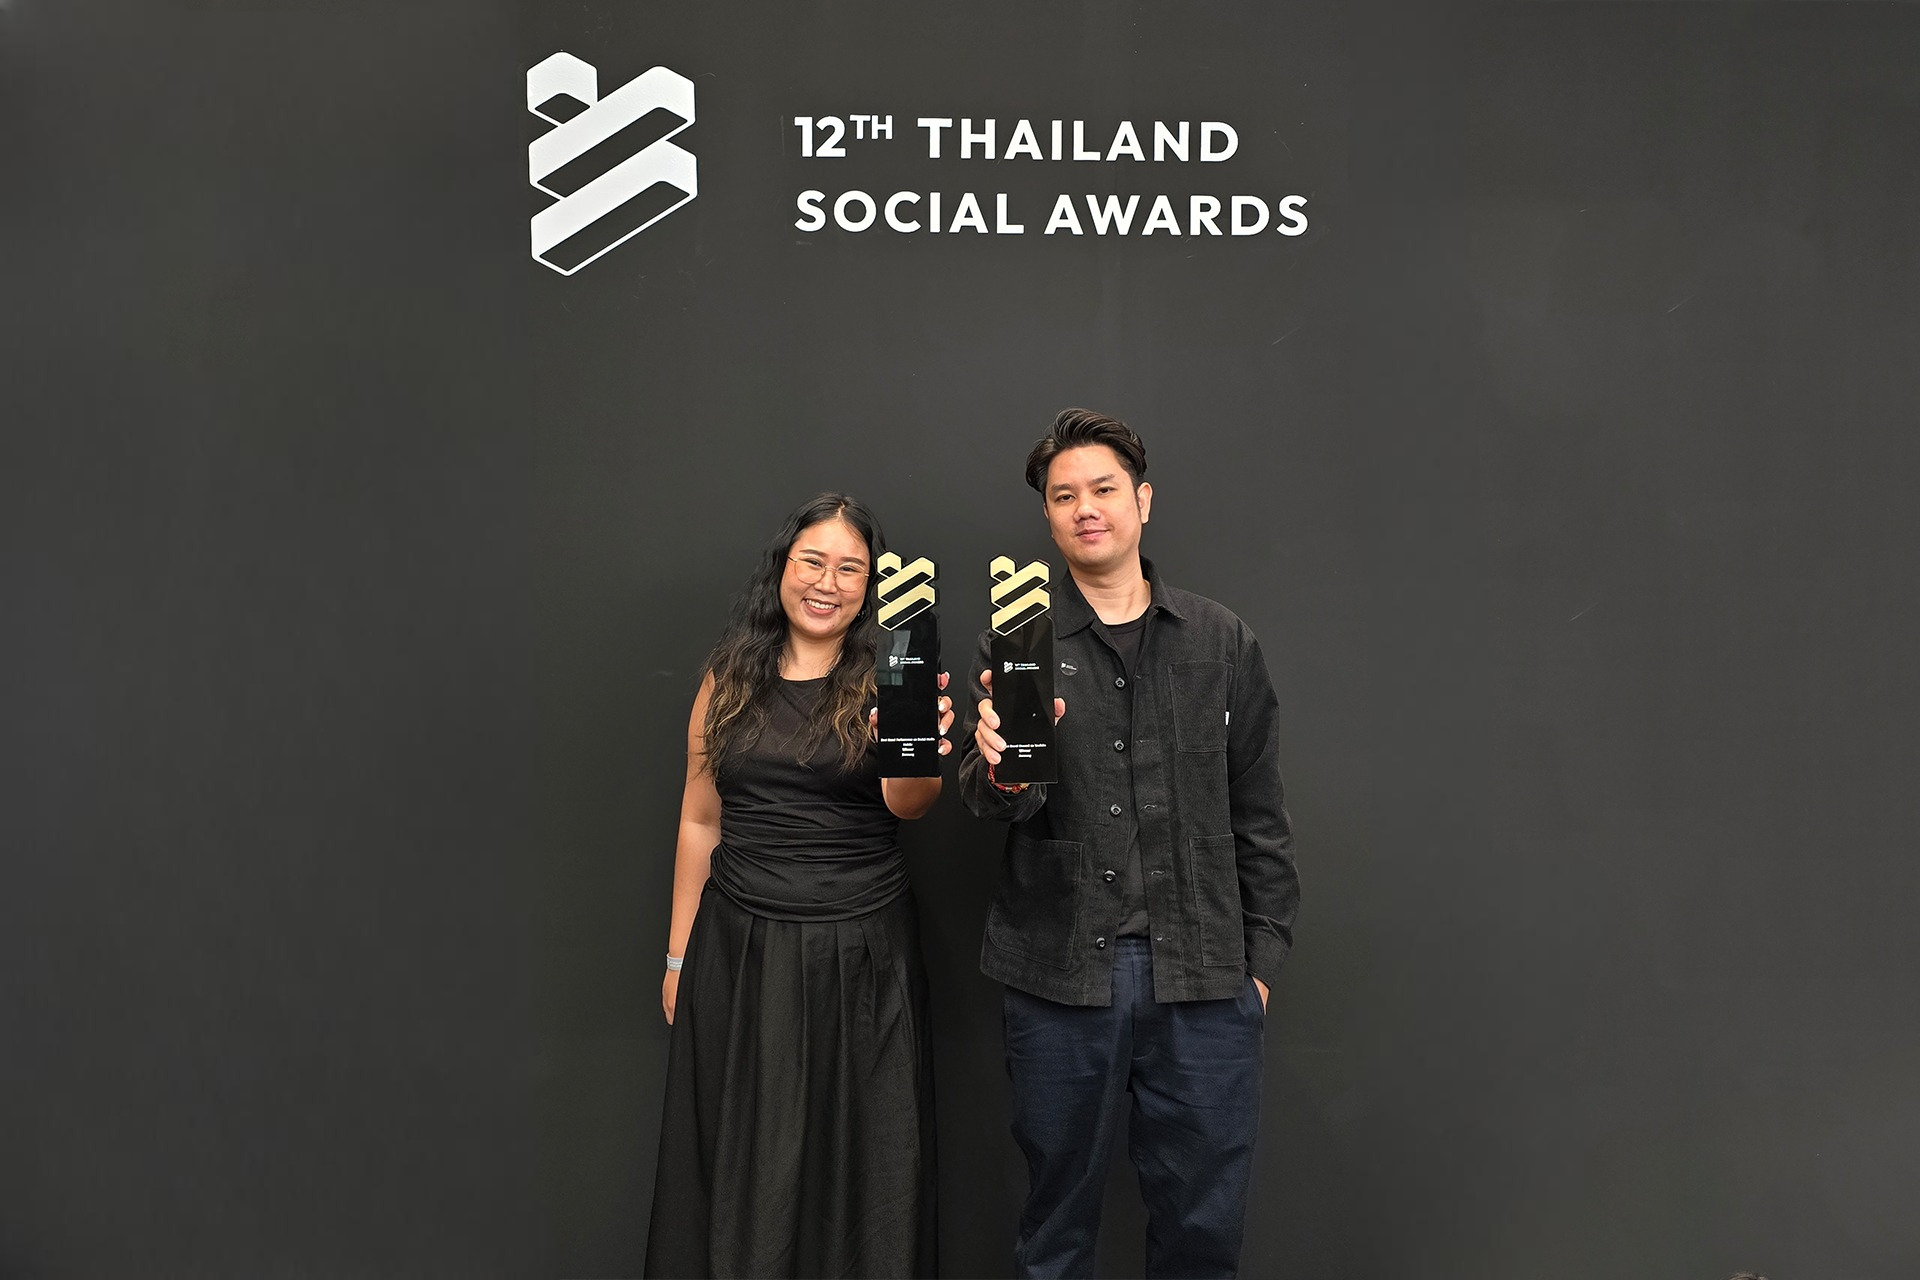 ซัมซุงคว้ารางวัล Best Brand Performance on Social Media สาขา Mobile ในงาน Thailand Social Awards ครั้งที่ 12